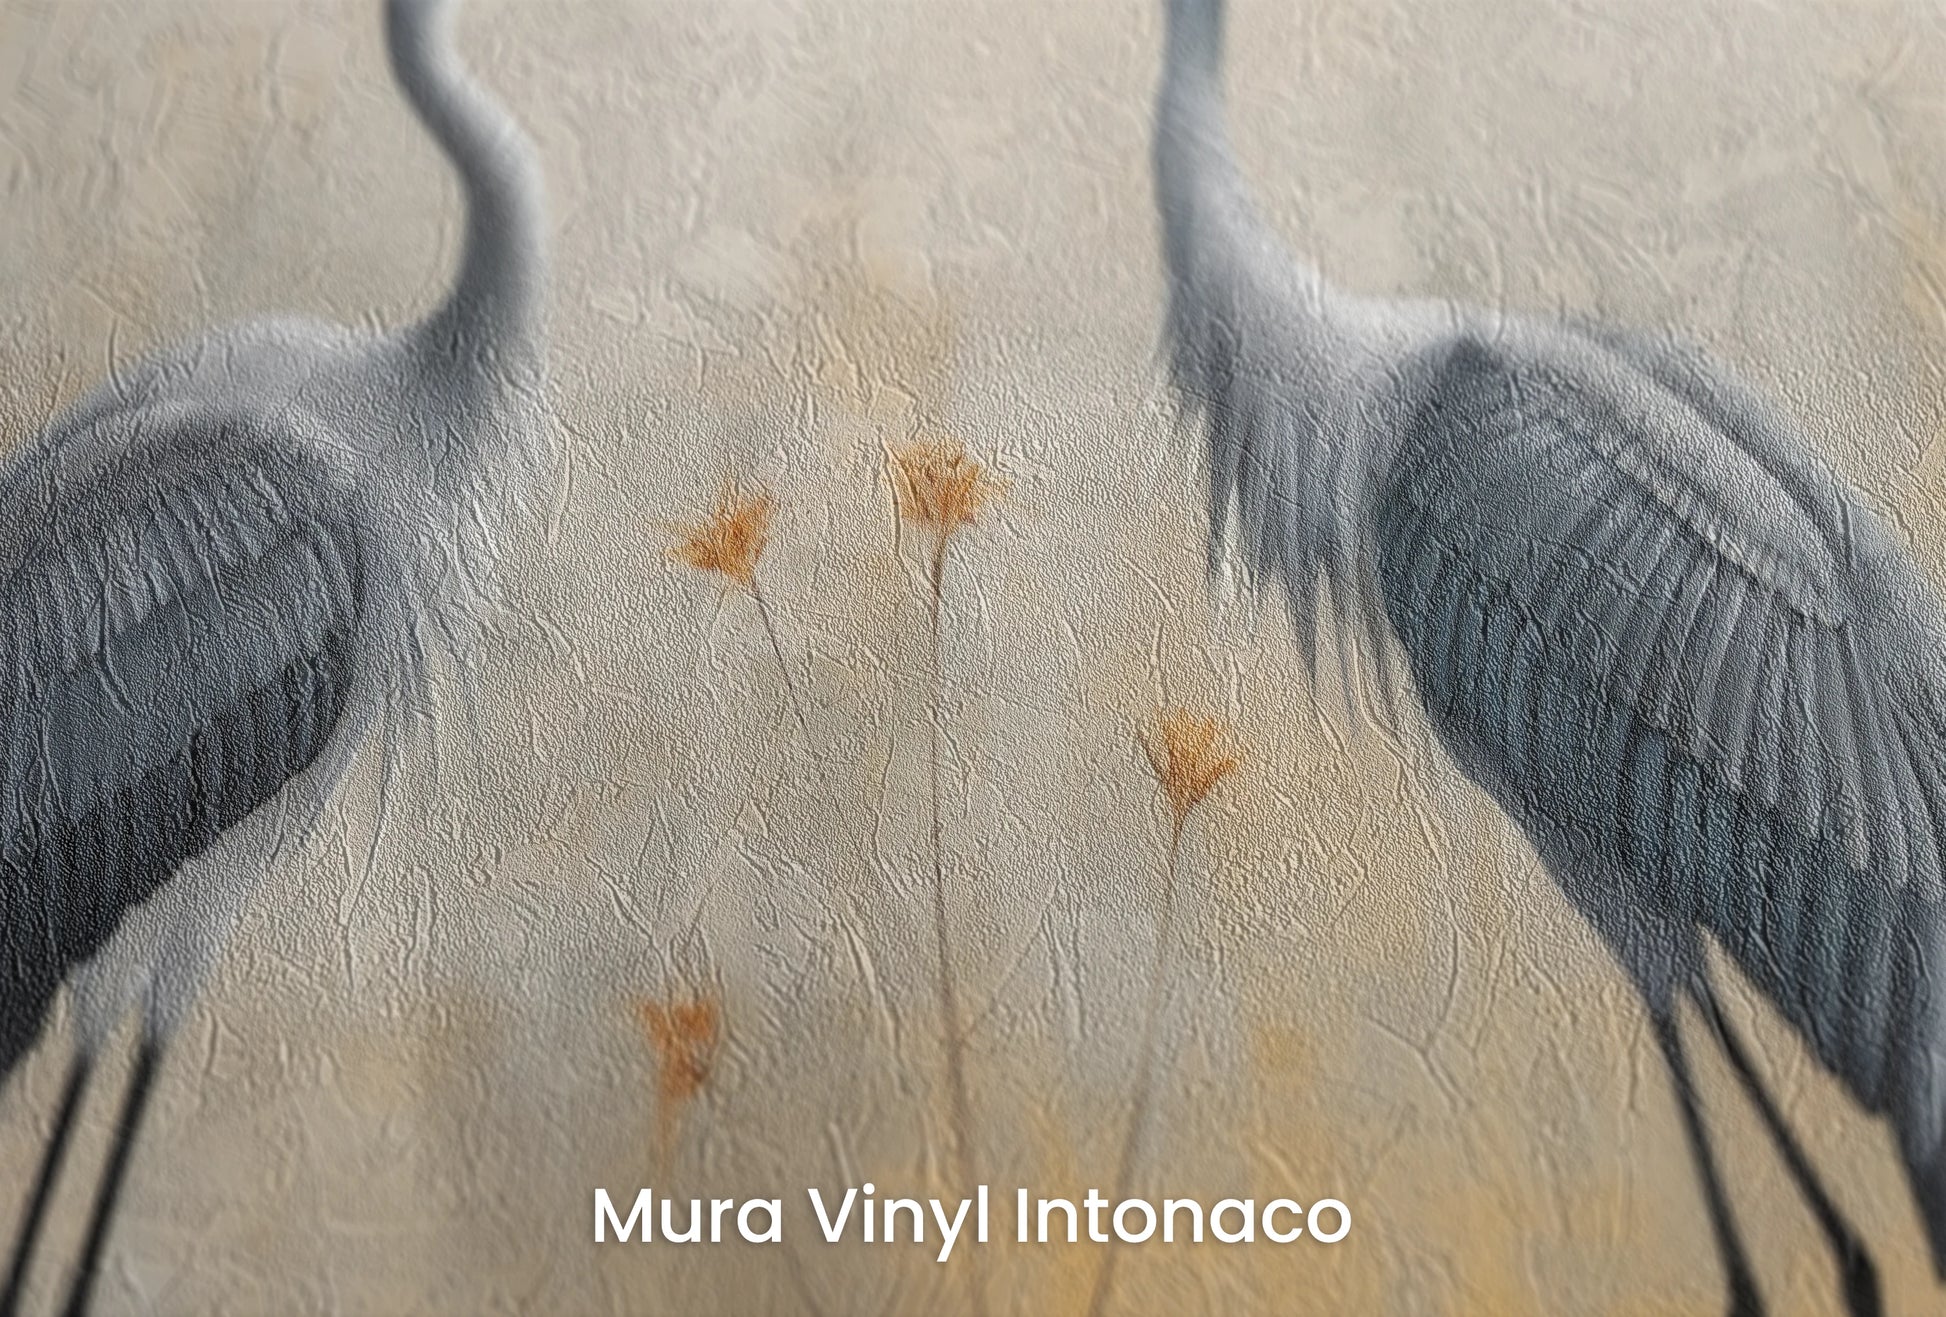 Zbliżenie na artystyczną fototapetę o nazwie Tranquil Unity na podłożu Mura Vinyl Intonaco - struktura tartego tynku.